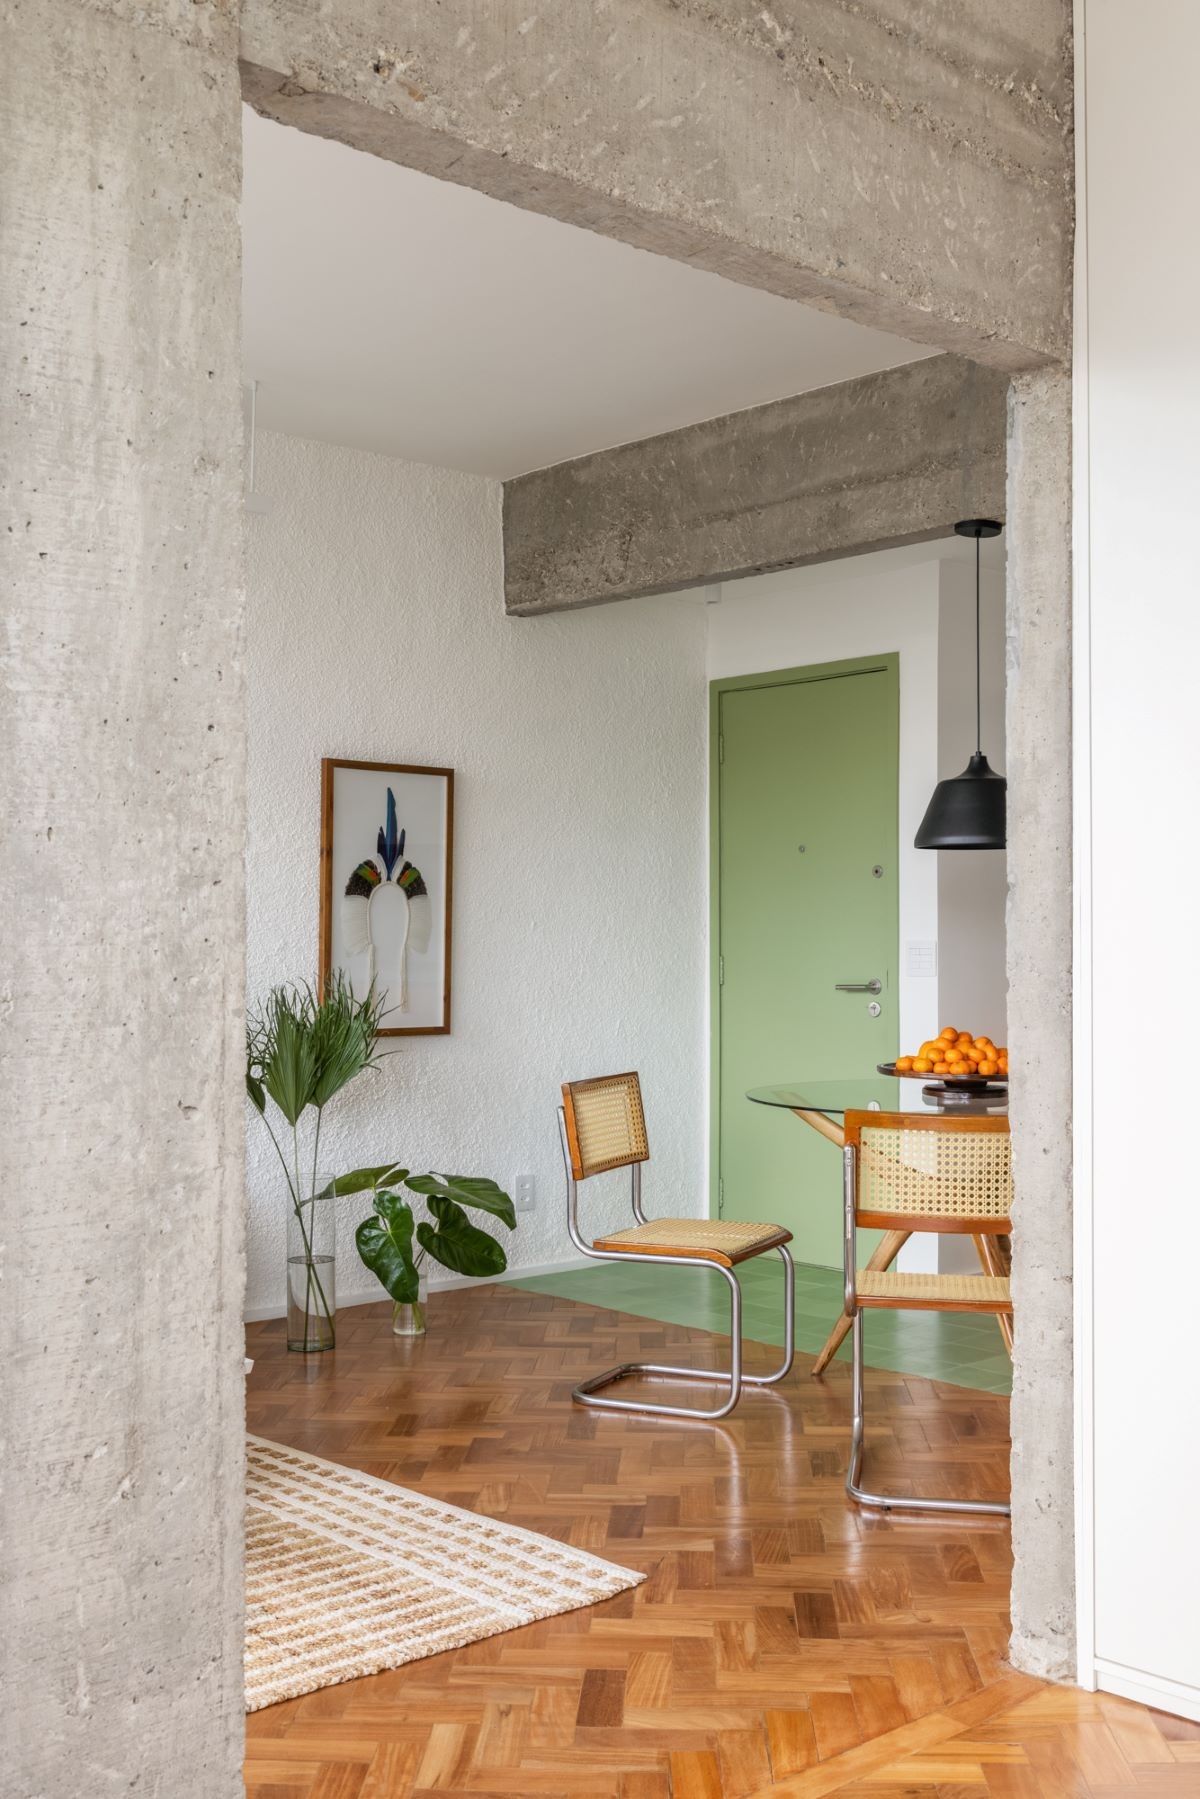 SALA DE JANTAR | A estrutura de concreto emoldura as salas e dá unidade ao projeto (Foto: Joana França / Divulgação)